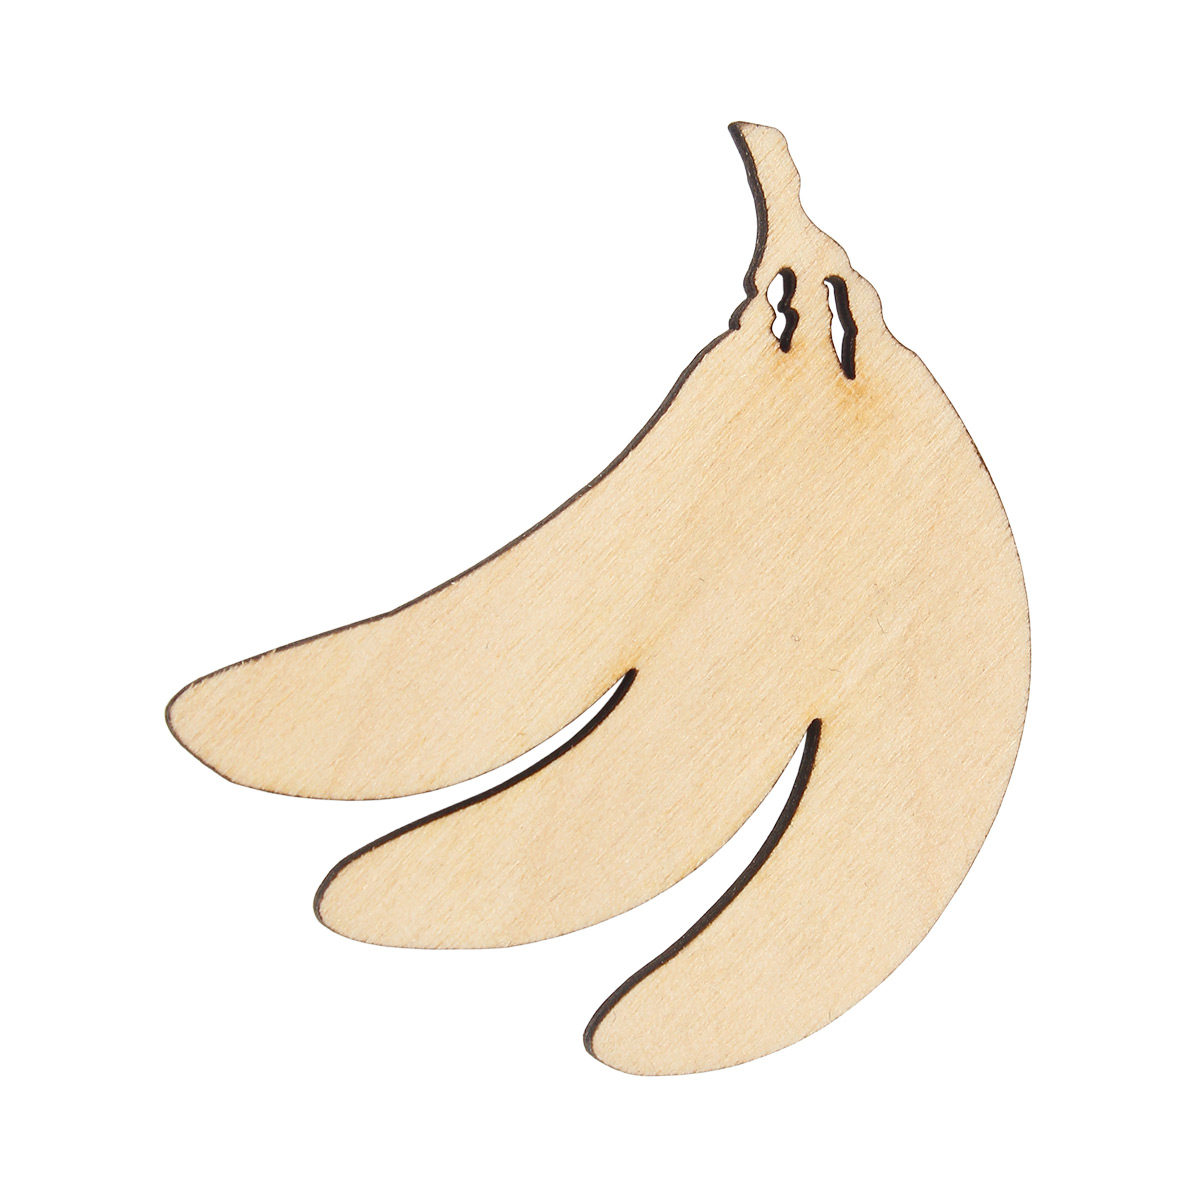 Деревянная заготовка Astra&Craft 'Бананы', L-97, 5 см, 5 шт исо 8 деревянная заготовка сборная шарик 12 12 8 3см astra